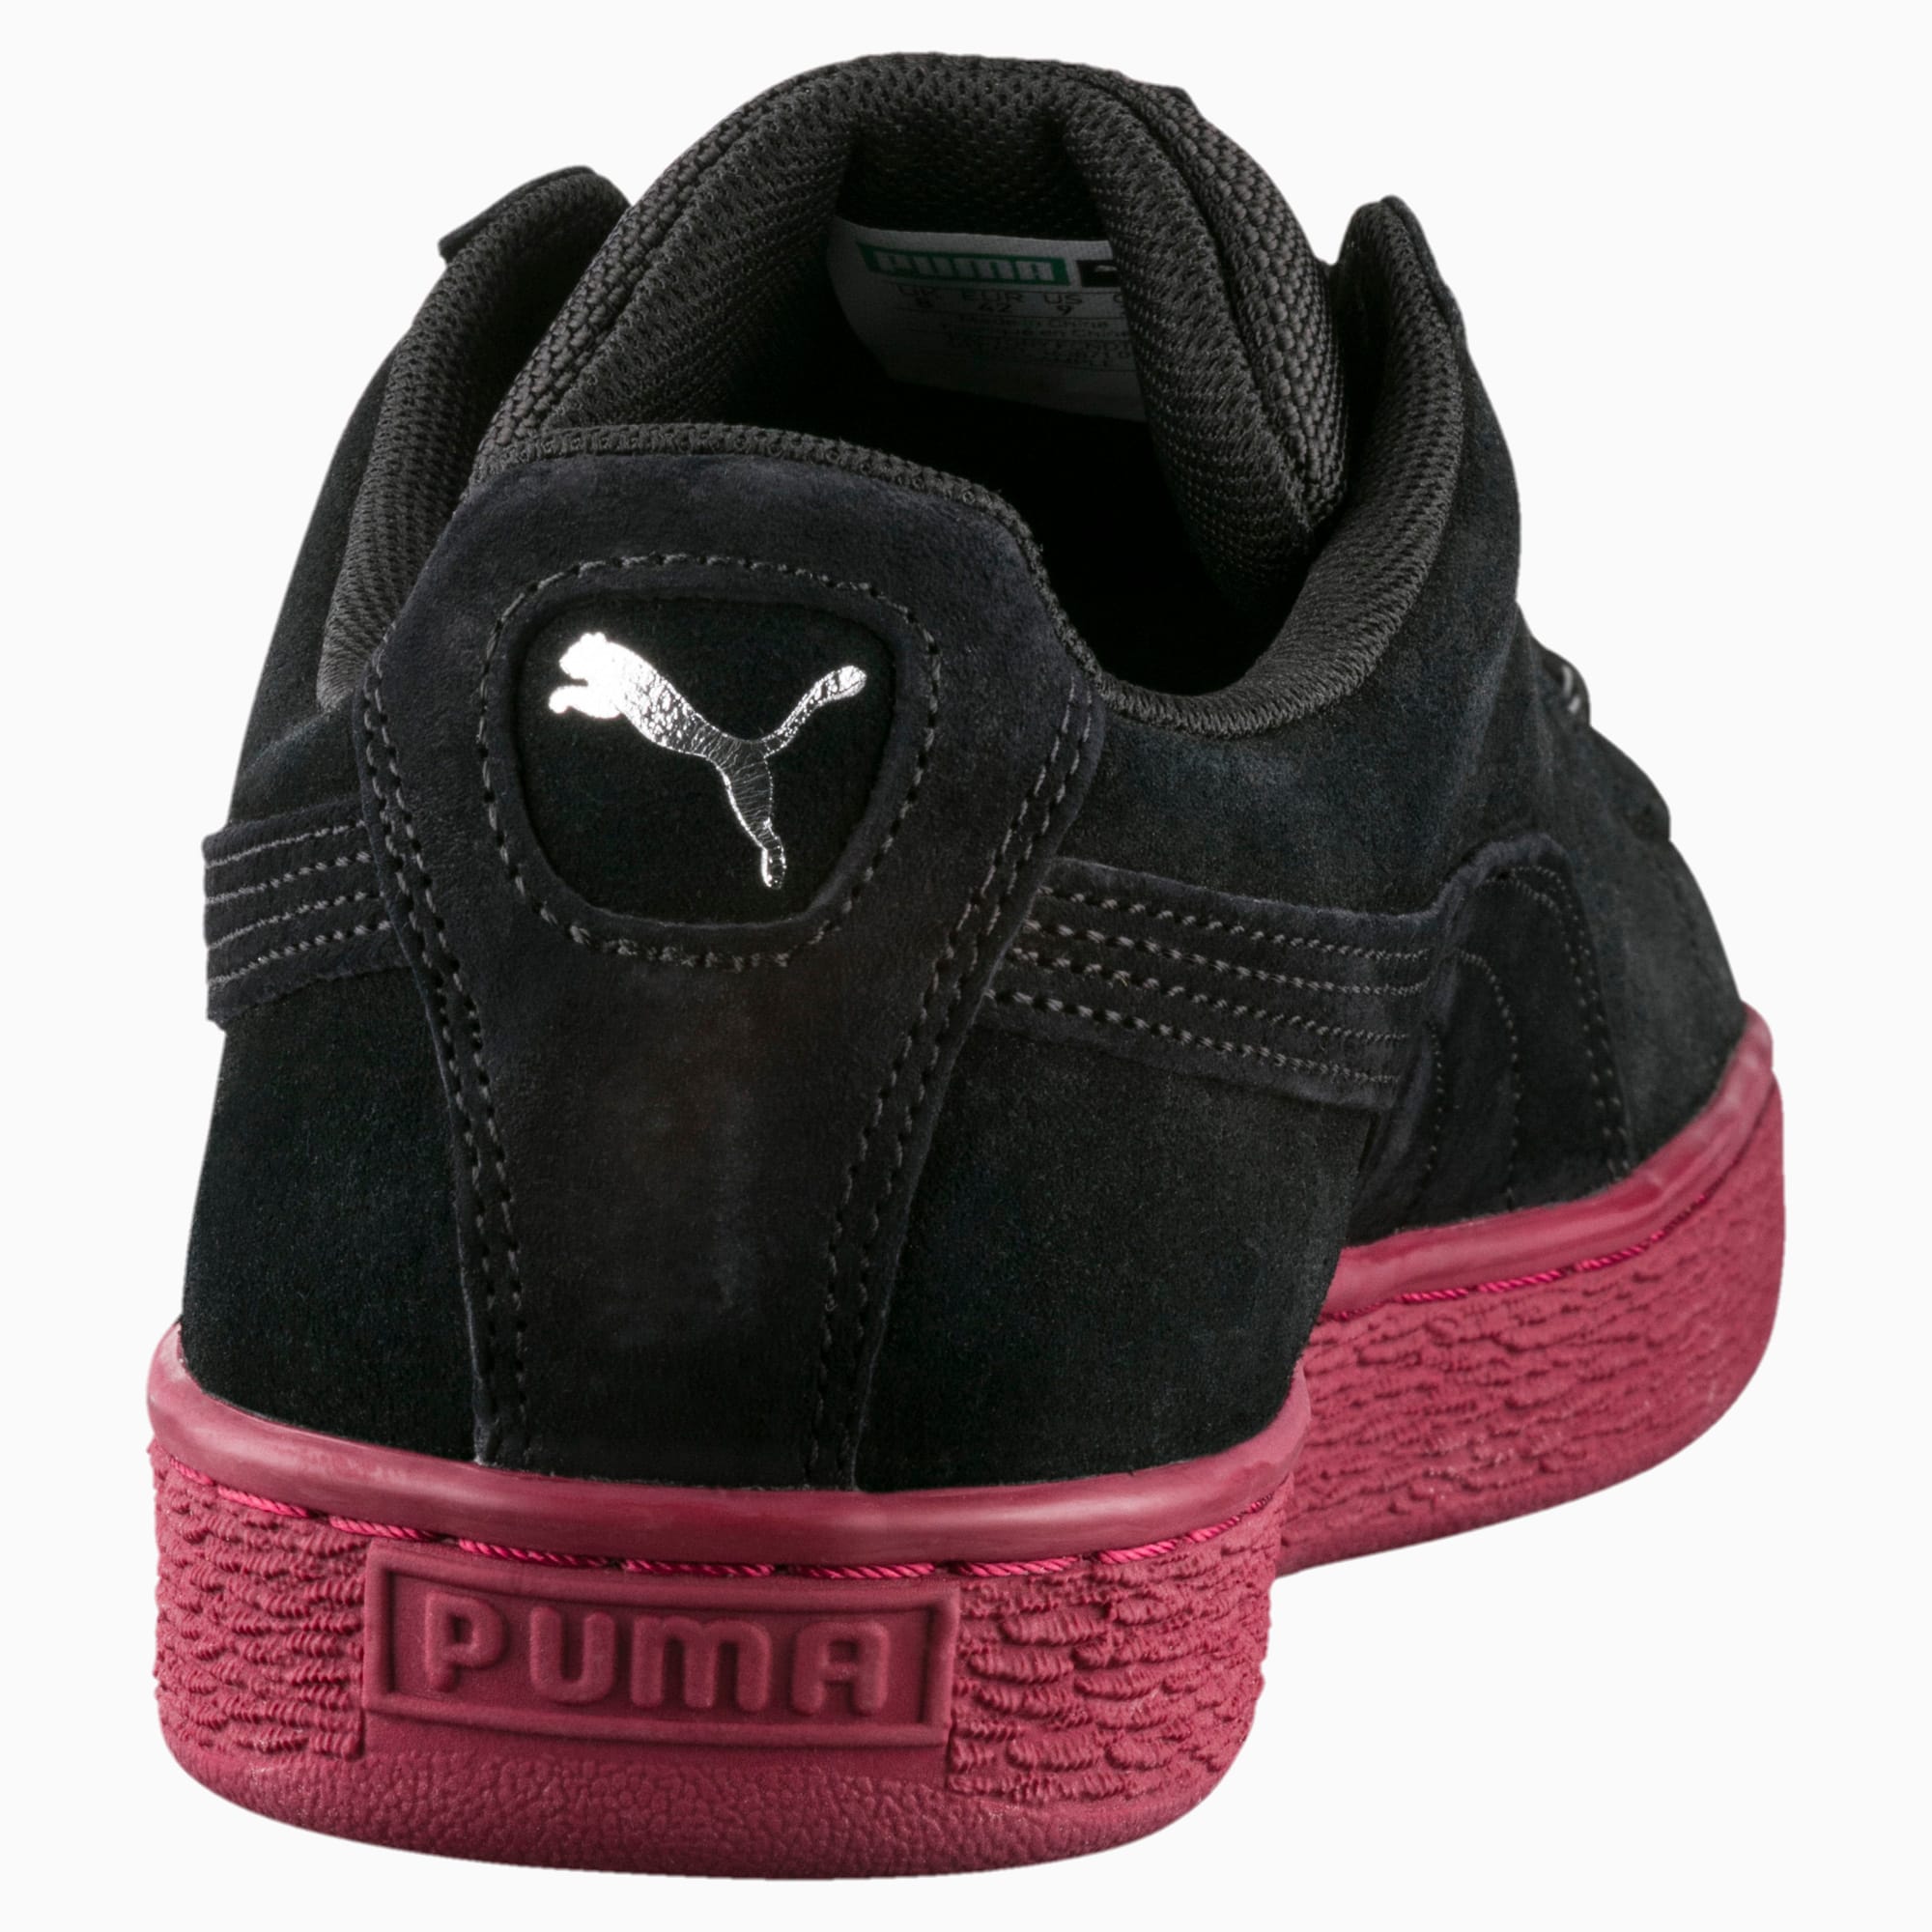 puma waterproof sneakers